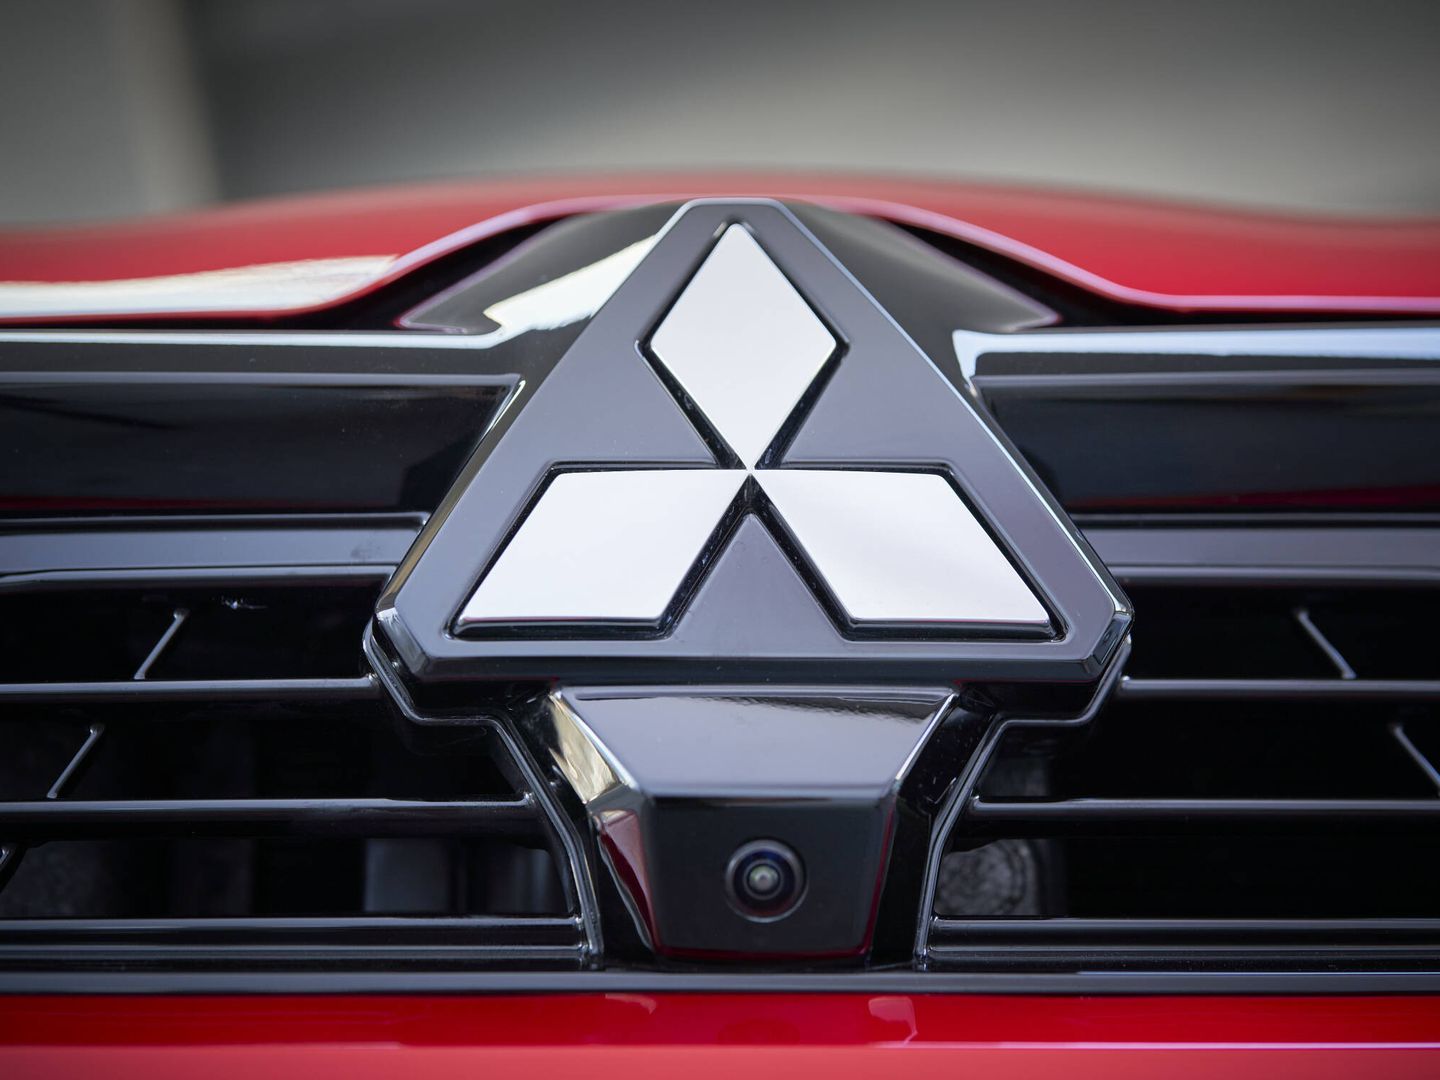 El logo de tres estrellas de Mitsubishi reina en el frontal del Colt.